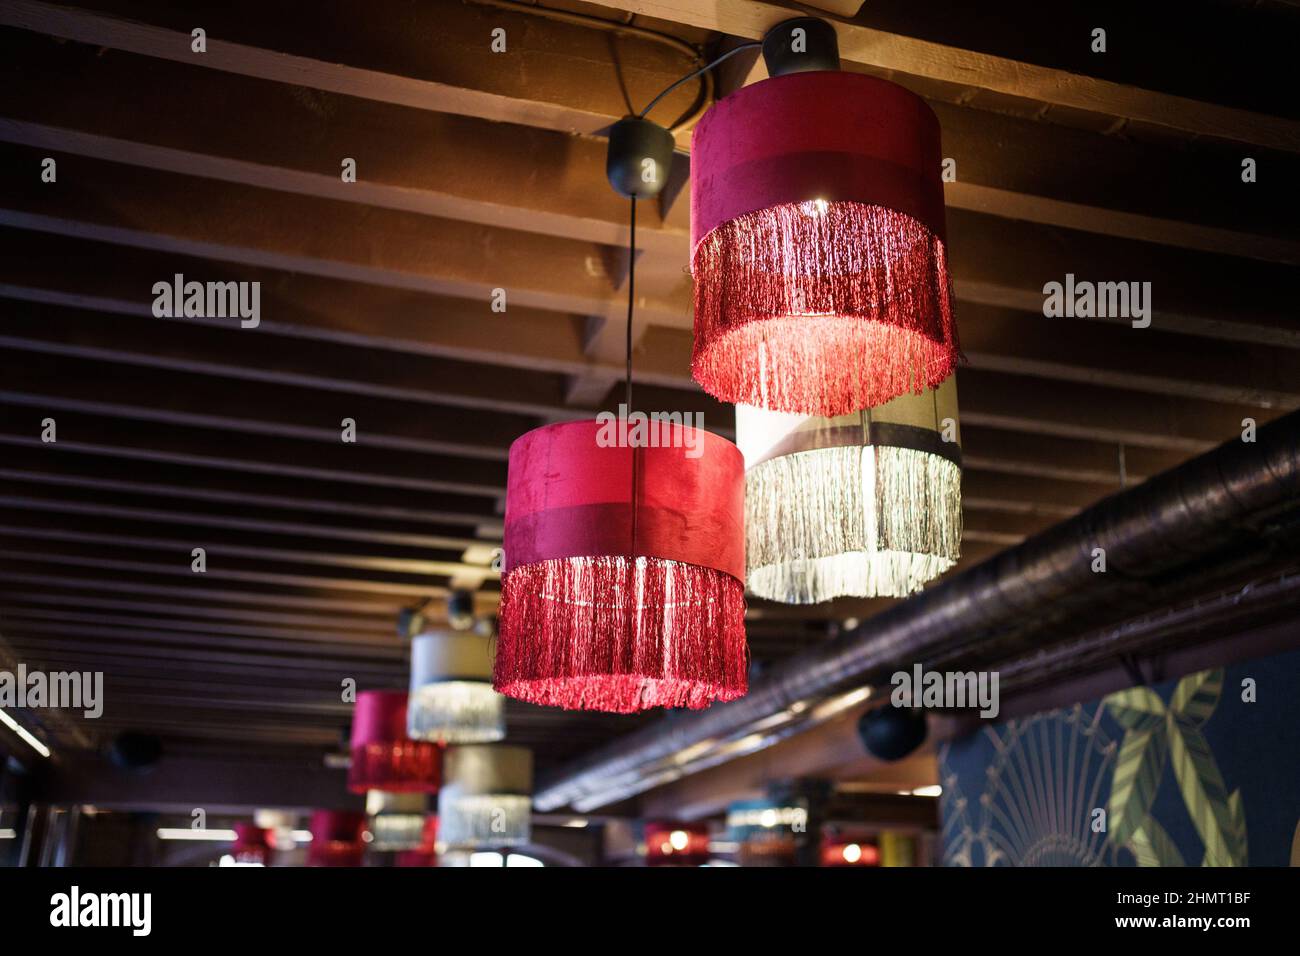 Intérieur d'un restaurant moderne avec lustres suspendus à un plafond en bois. Banque D'Images